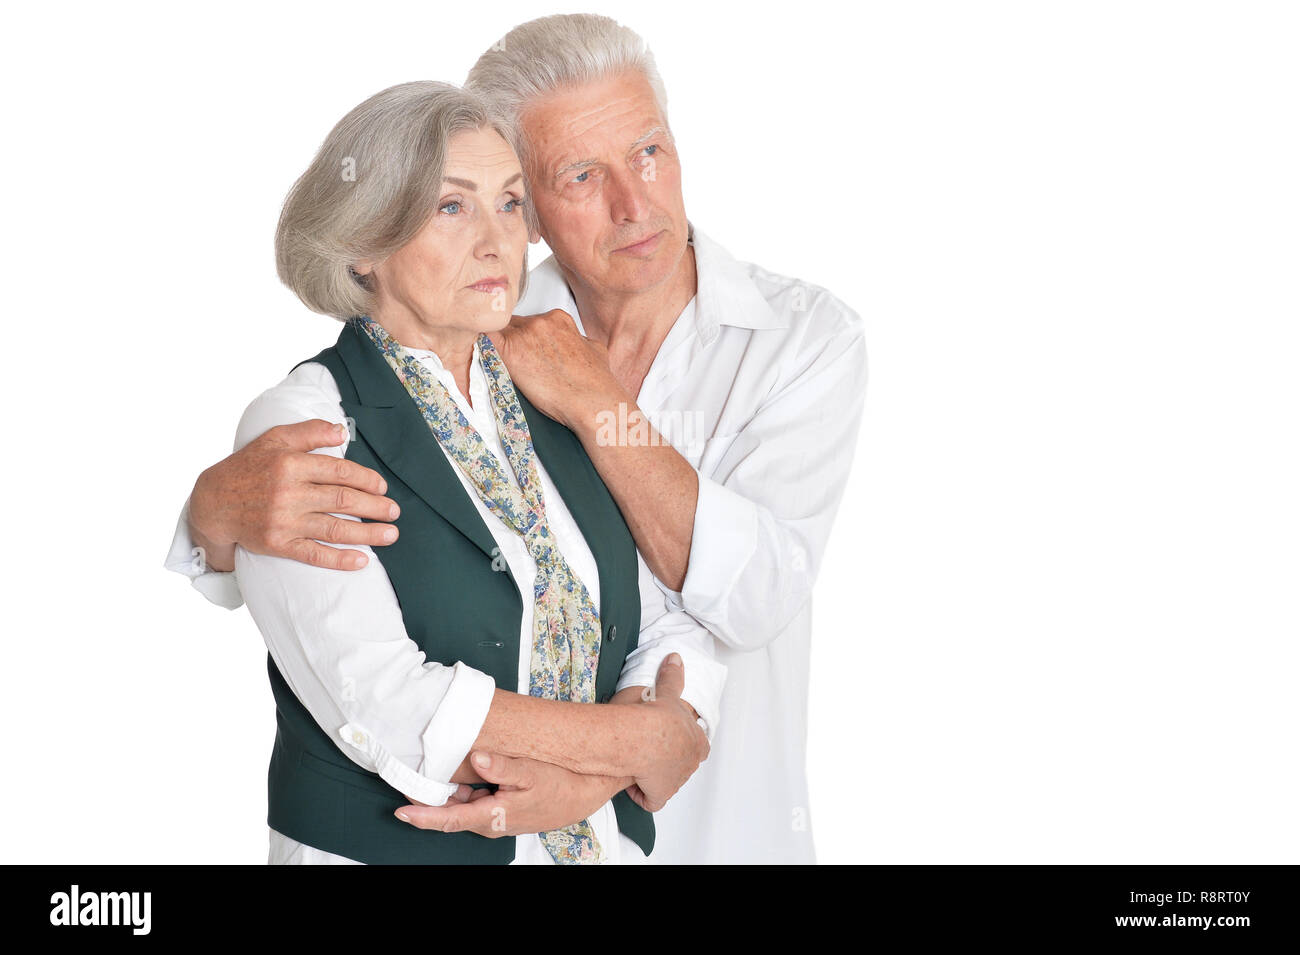 Portrait of thinking senior couple on white background Stock Photo